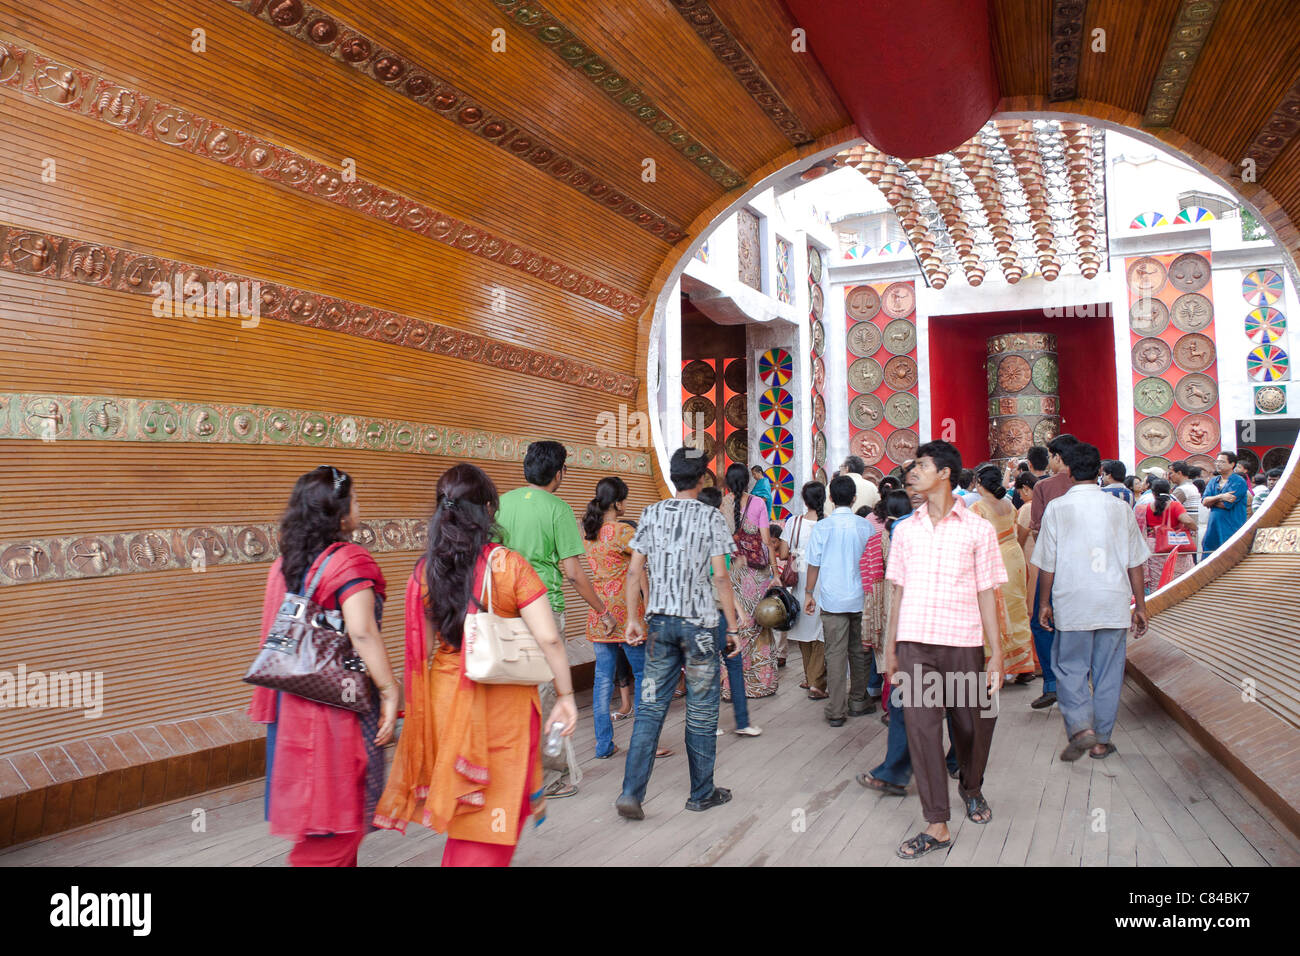 Gran voce in legno a 'Pukur Bose Durga Puja pandal' in Kasba, Kolkata (Calcutta), West Bengal, India. Foto Stock